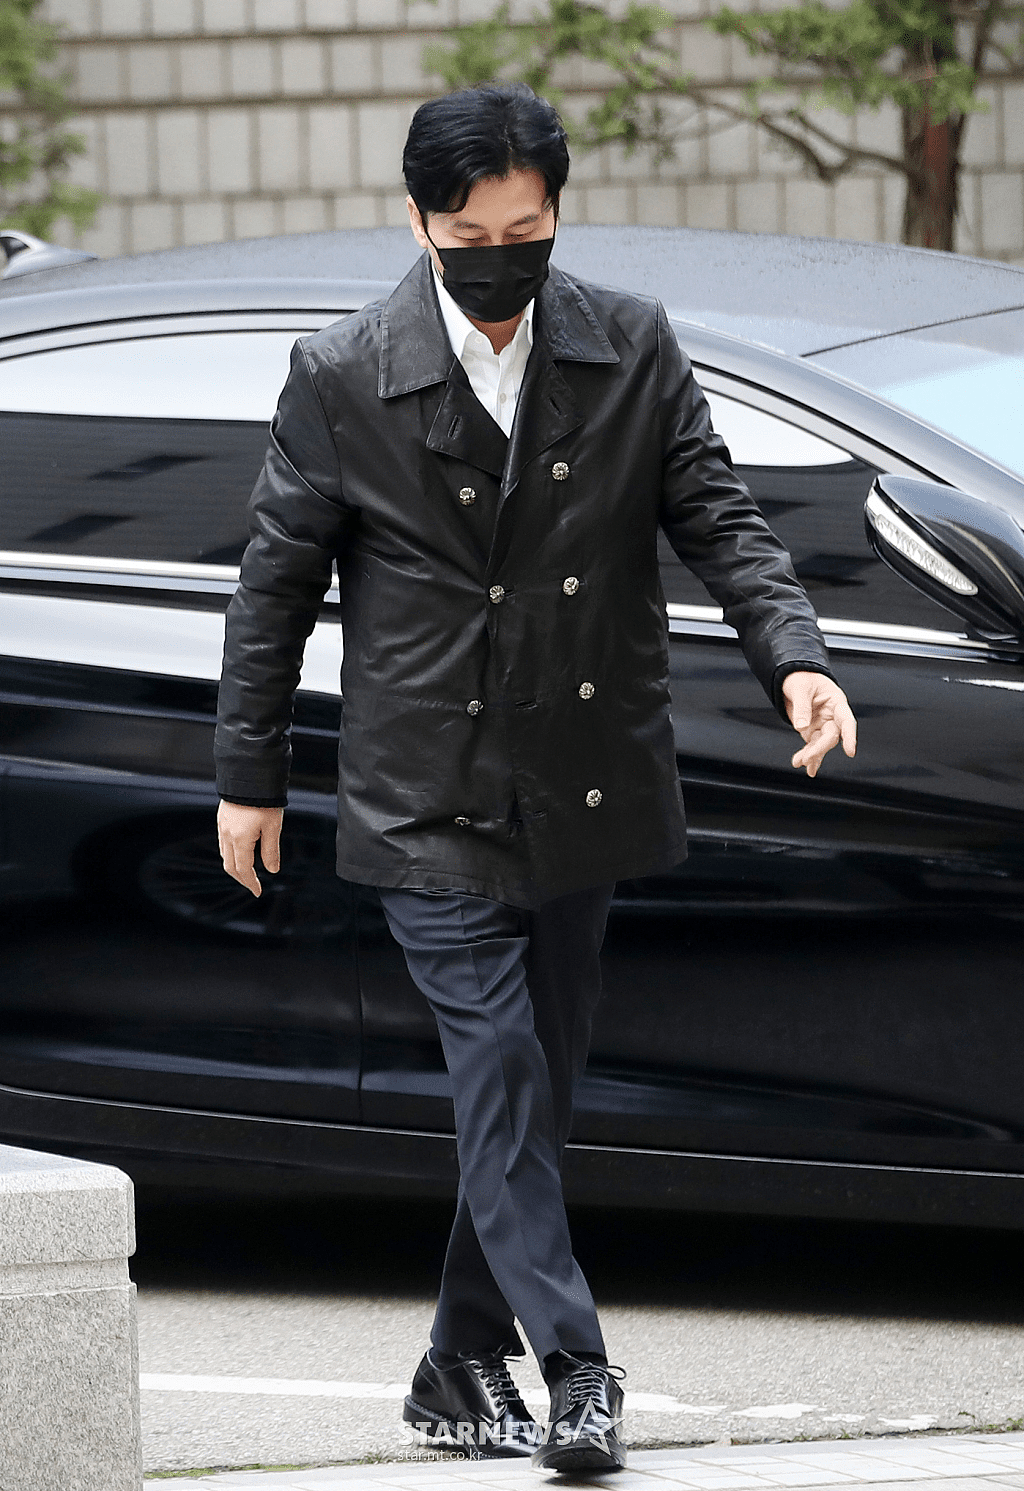 YG娱乐公司原代表梁铉锡涉嫌干预警方调查出庭受审 - 3